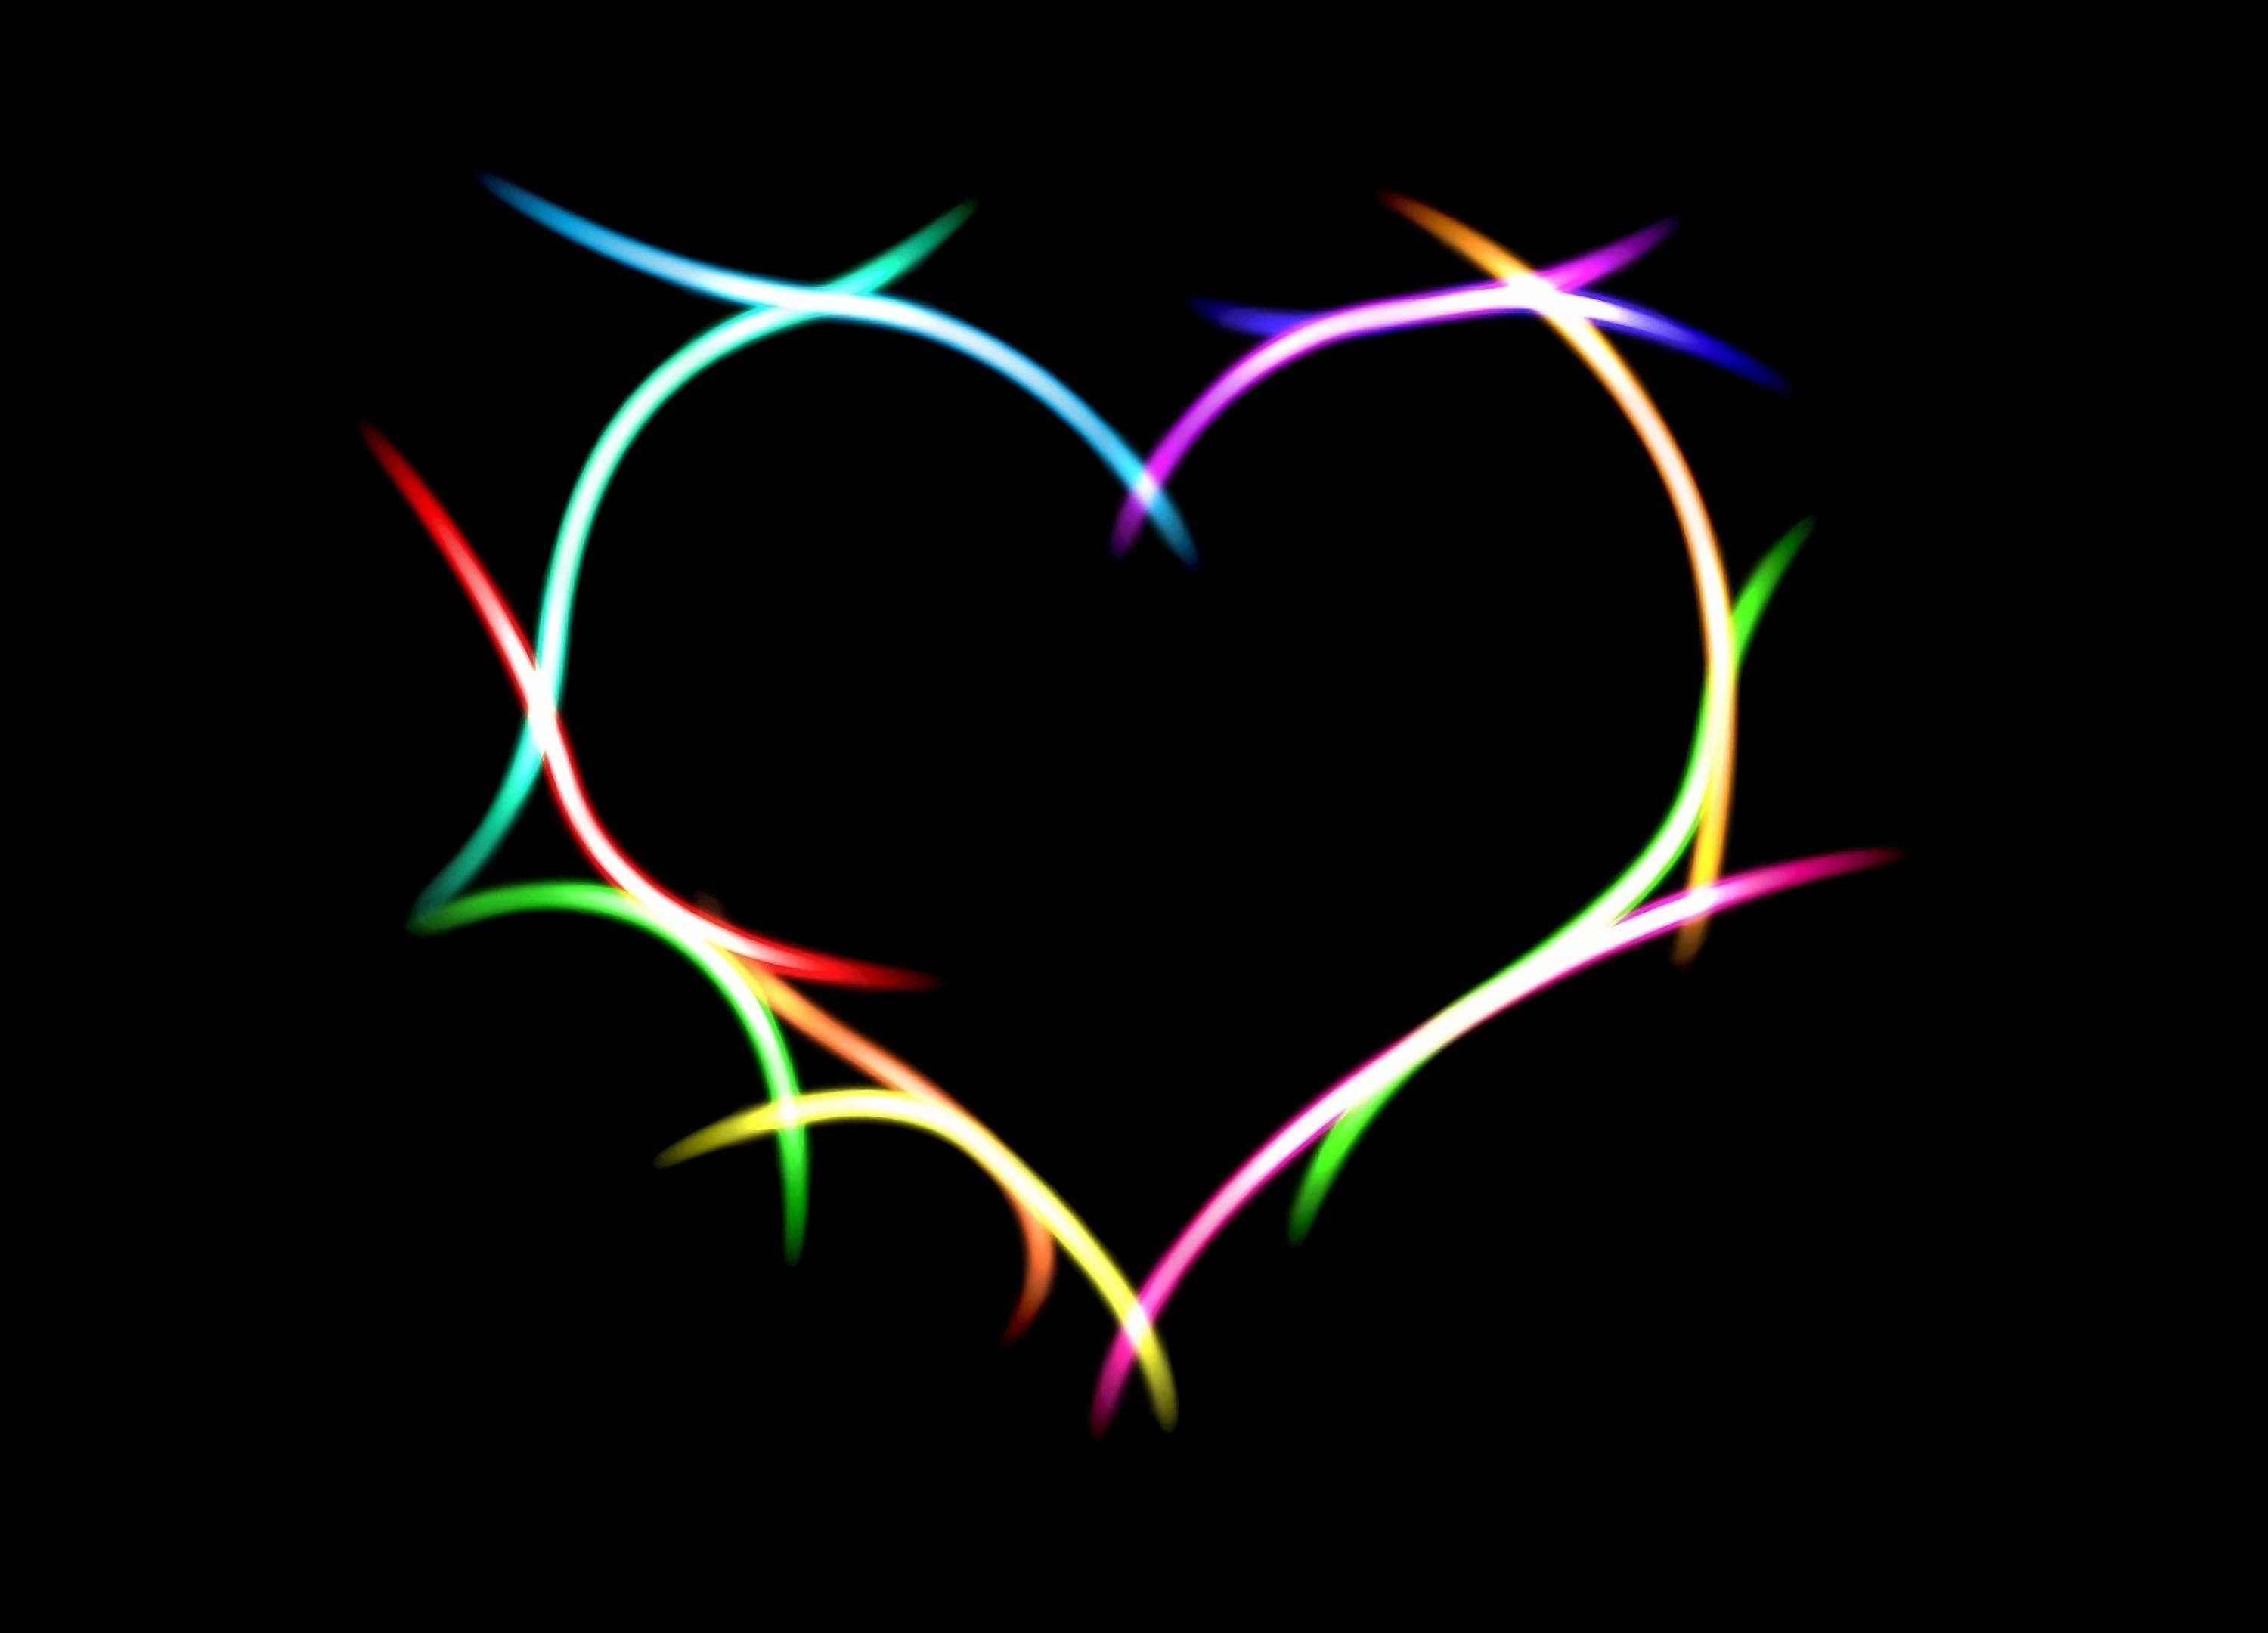 artistic, neon, light, heart wallpaper for mobile